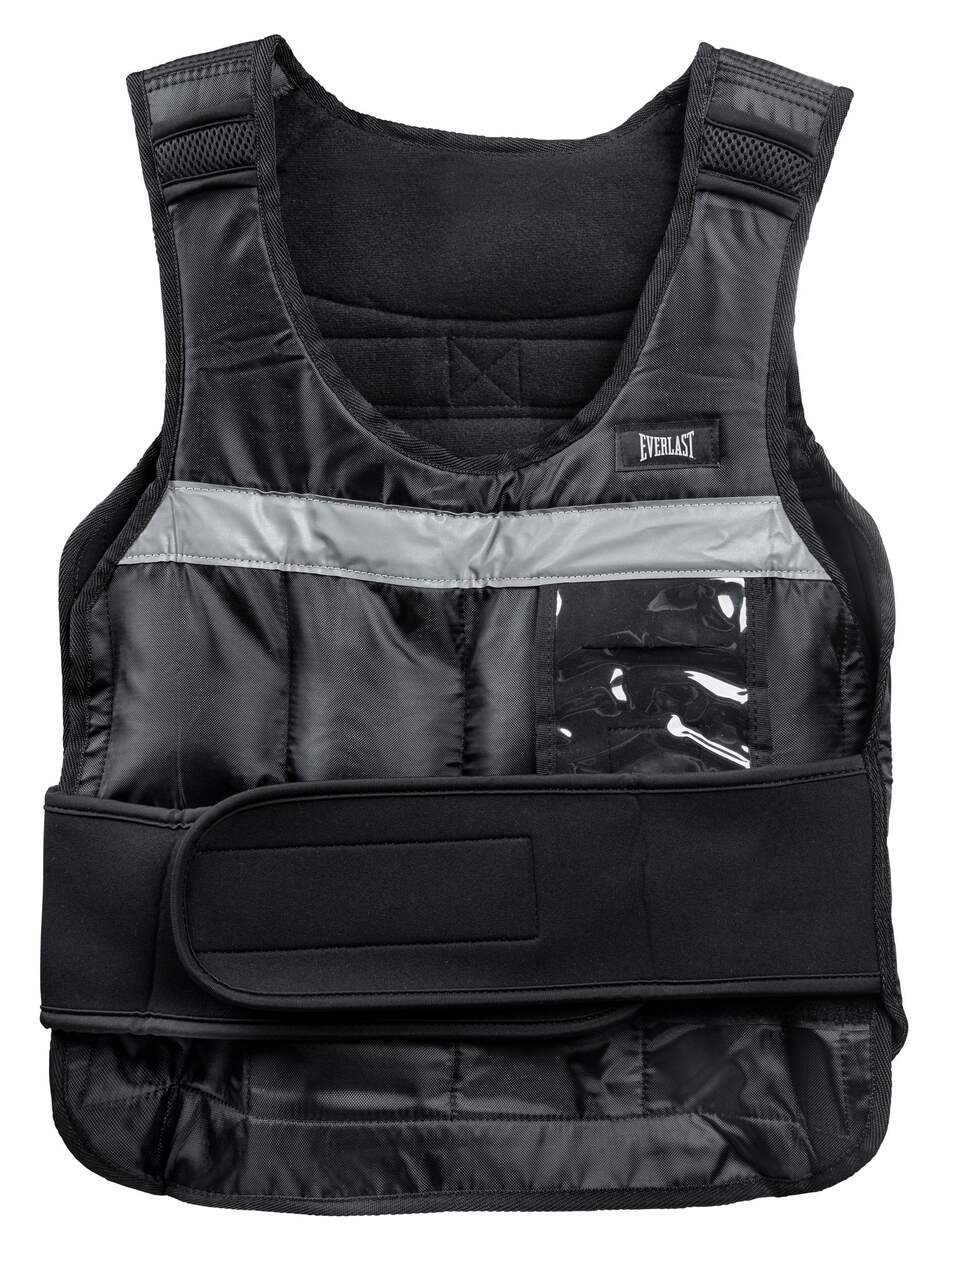 Everlast Adjustable Weighted Vest, 0-20-lbs